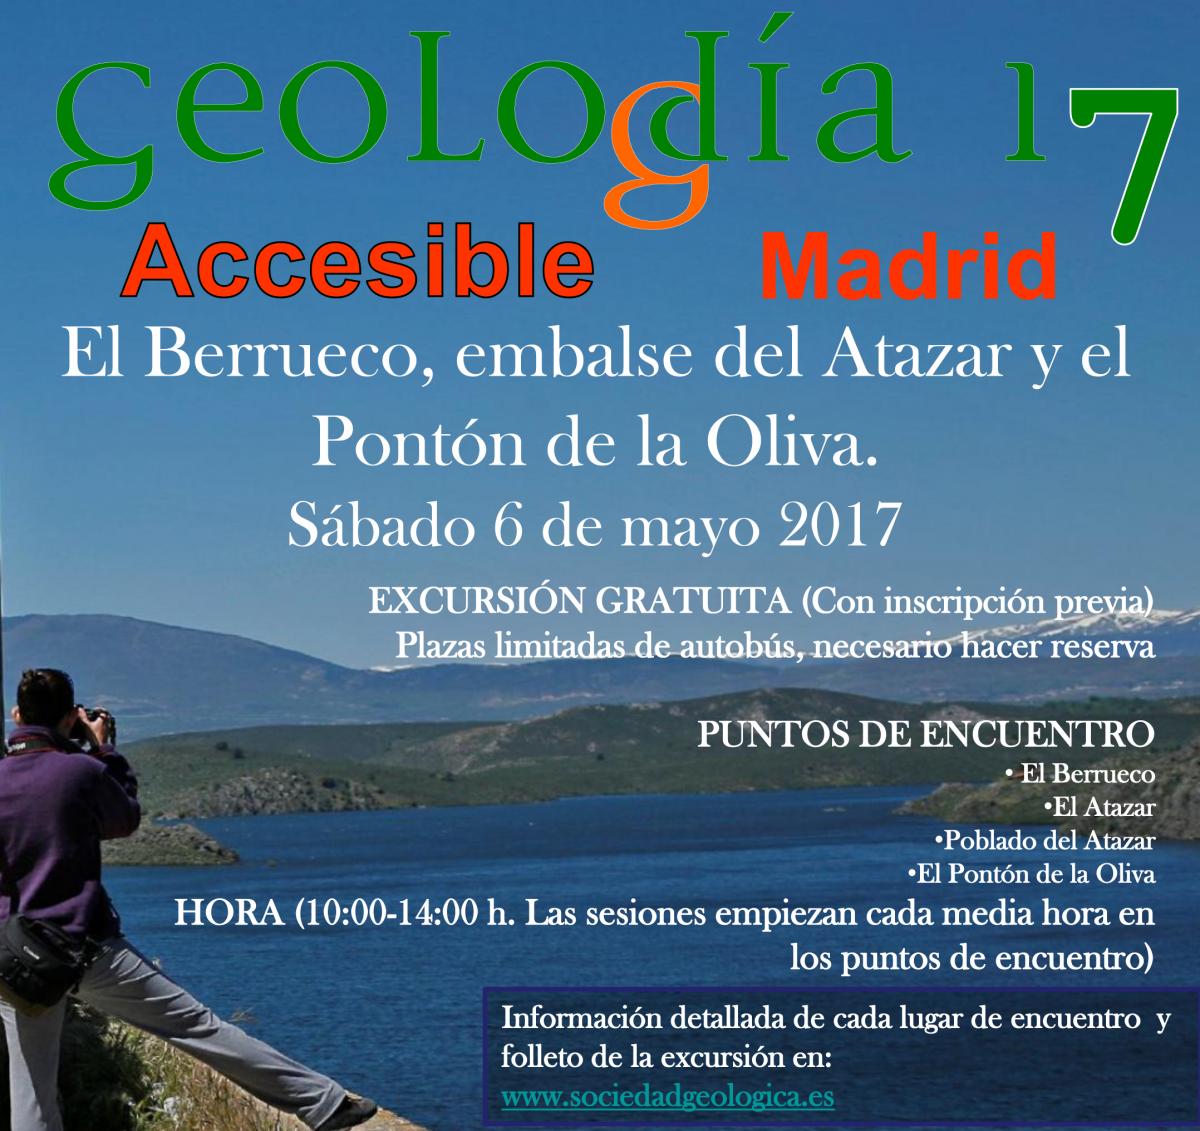 Póster publicitario de Geología 2017